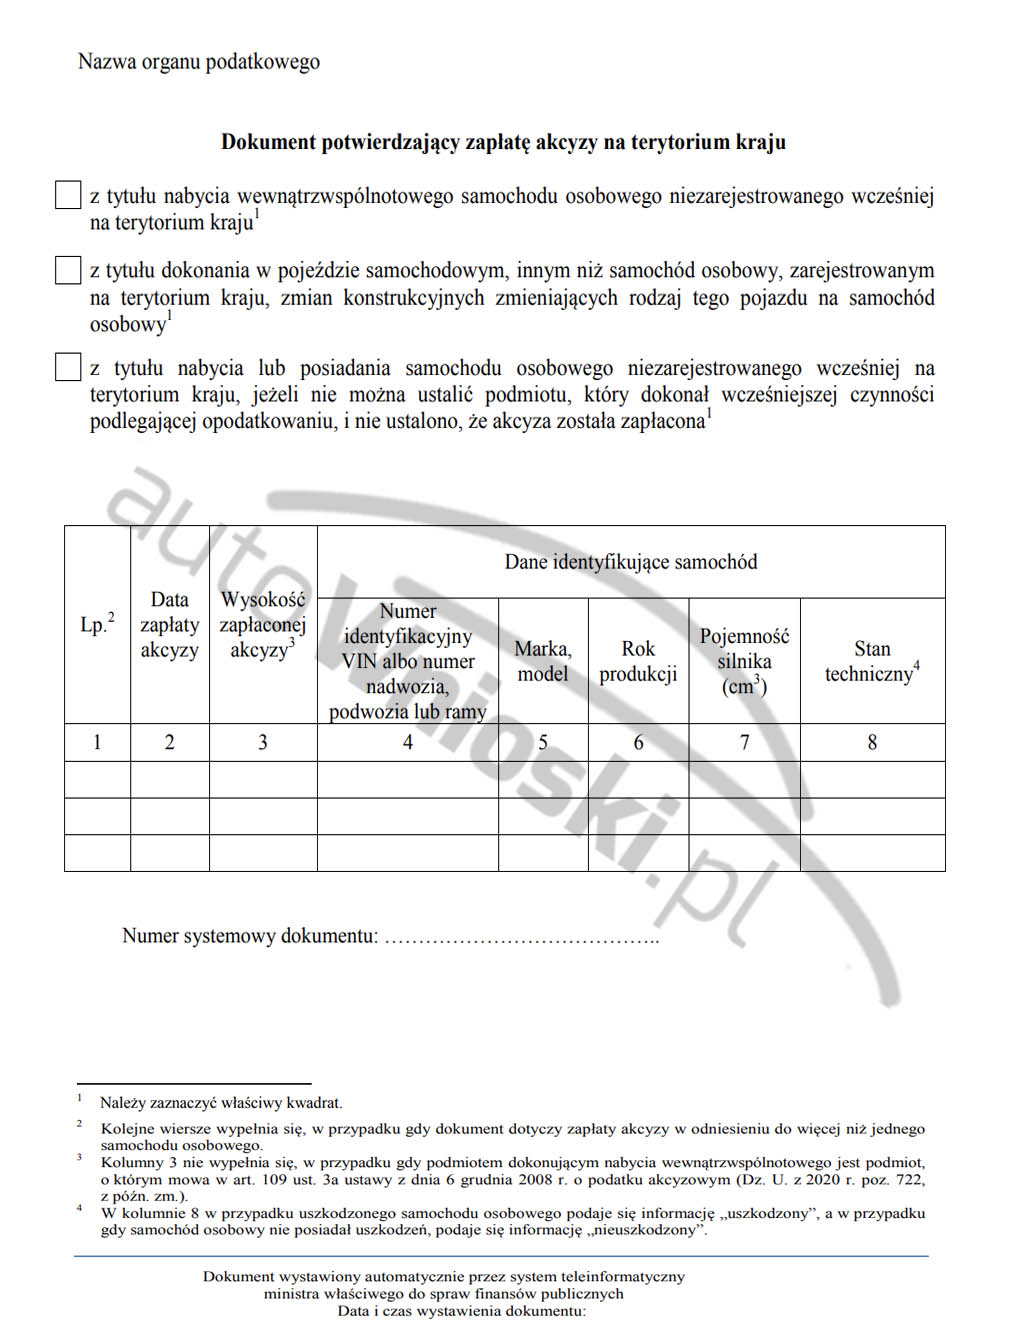 Jak Wygląda Wzór Potwierdzenia Zapłaty Akcyzy Od Samochodu Osobowego Lub Pojazdu Samochodowego Innego • Autownioski.pl